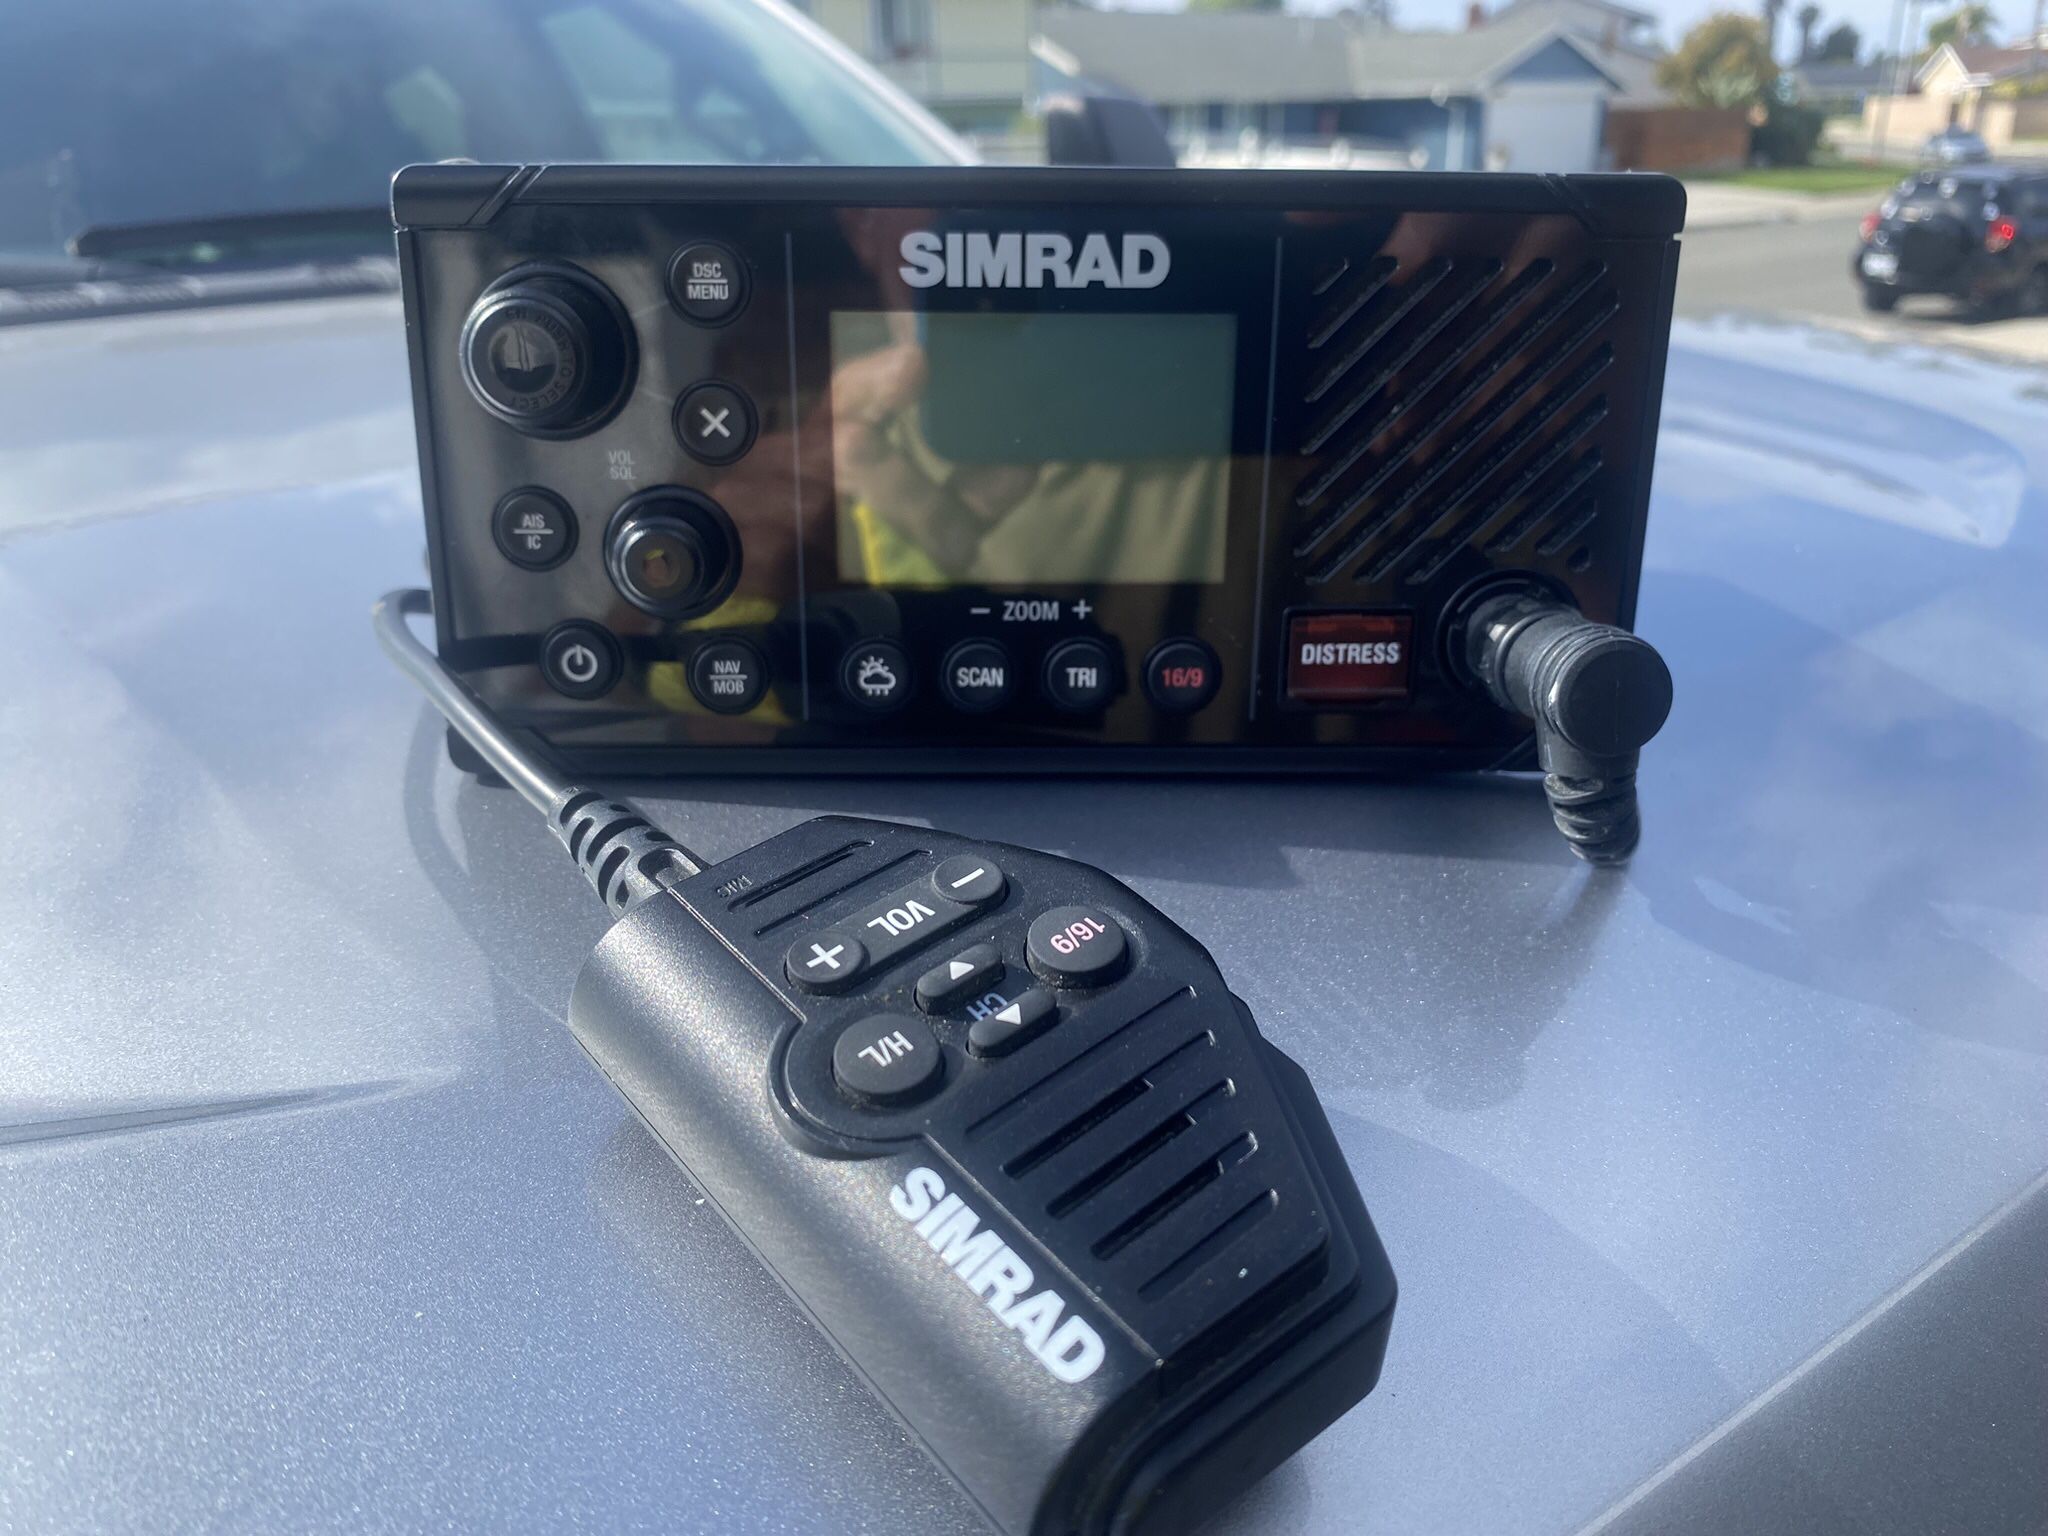 Simrad RS40 VHF